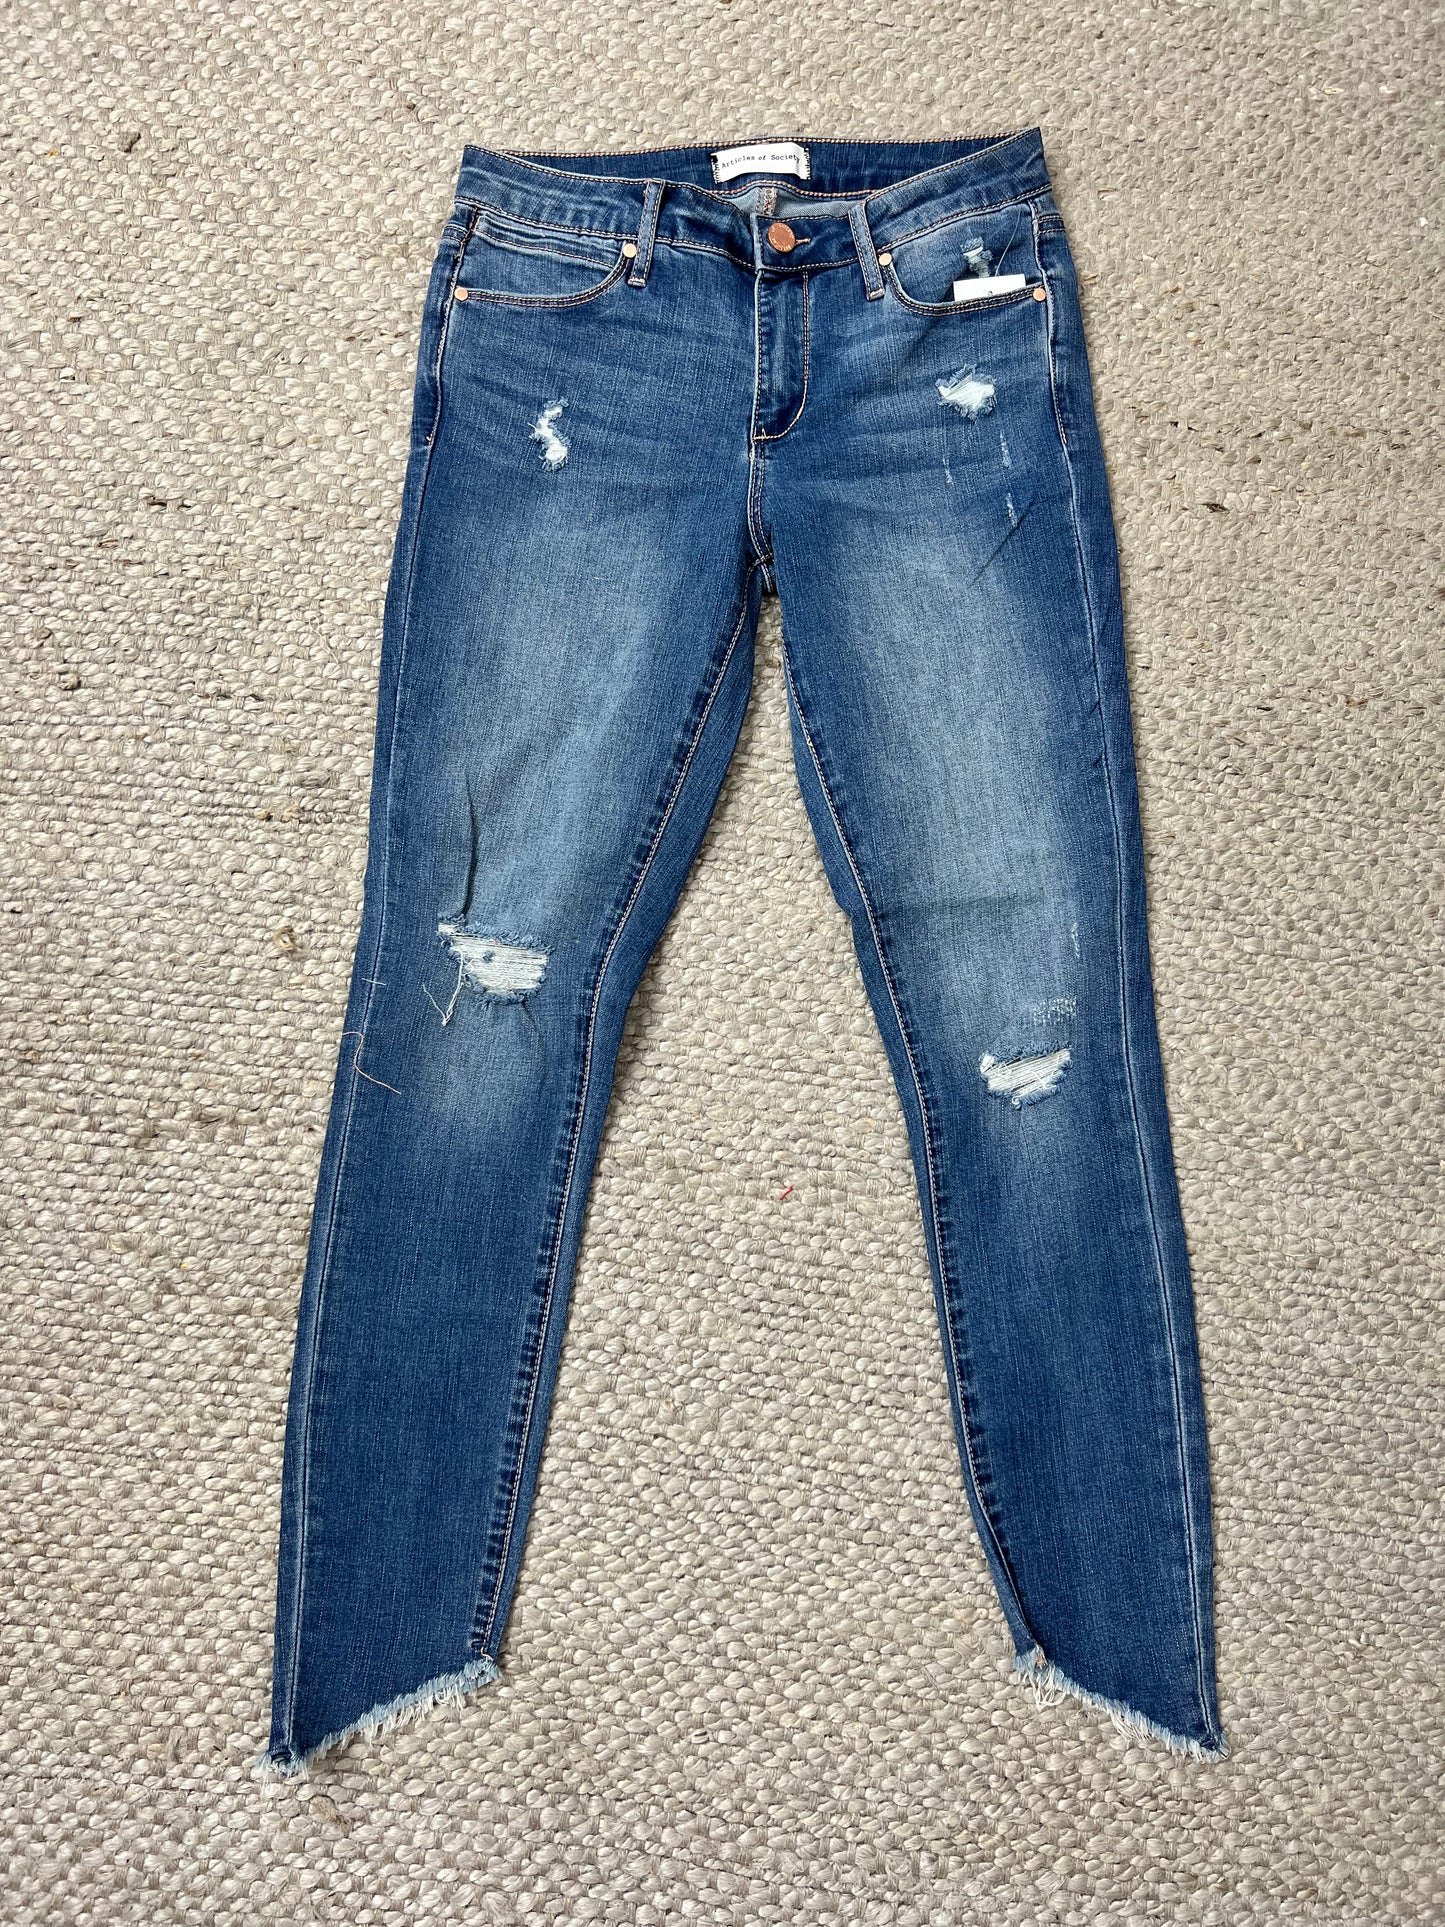 Suzy Newport Jeans